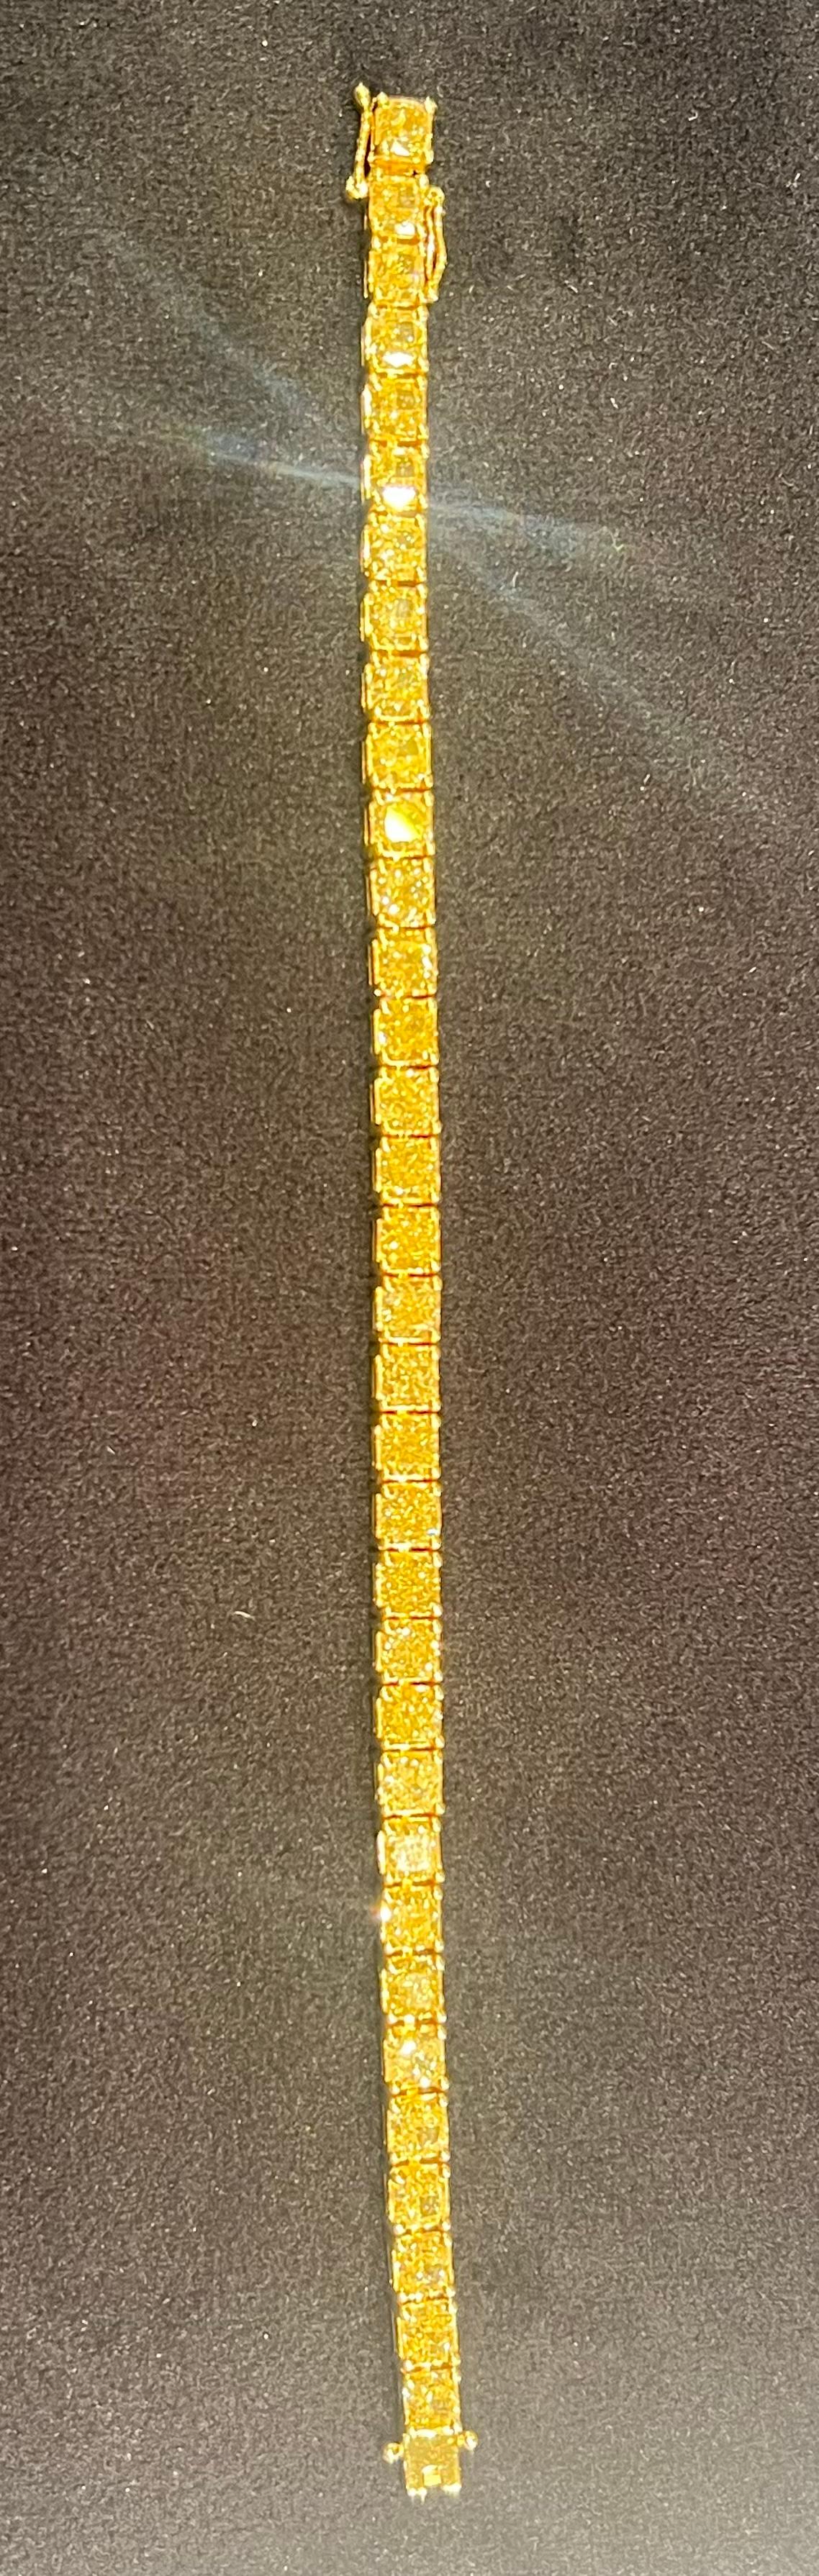 Ravishing 19.57 Carat Fancy Yellow Diamond 18k Yellow Gold Tennis Bracelet  2